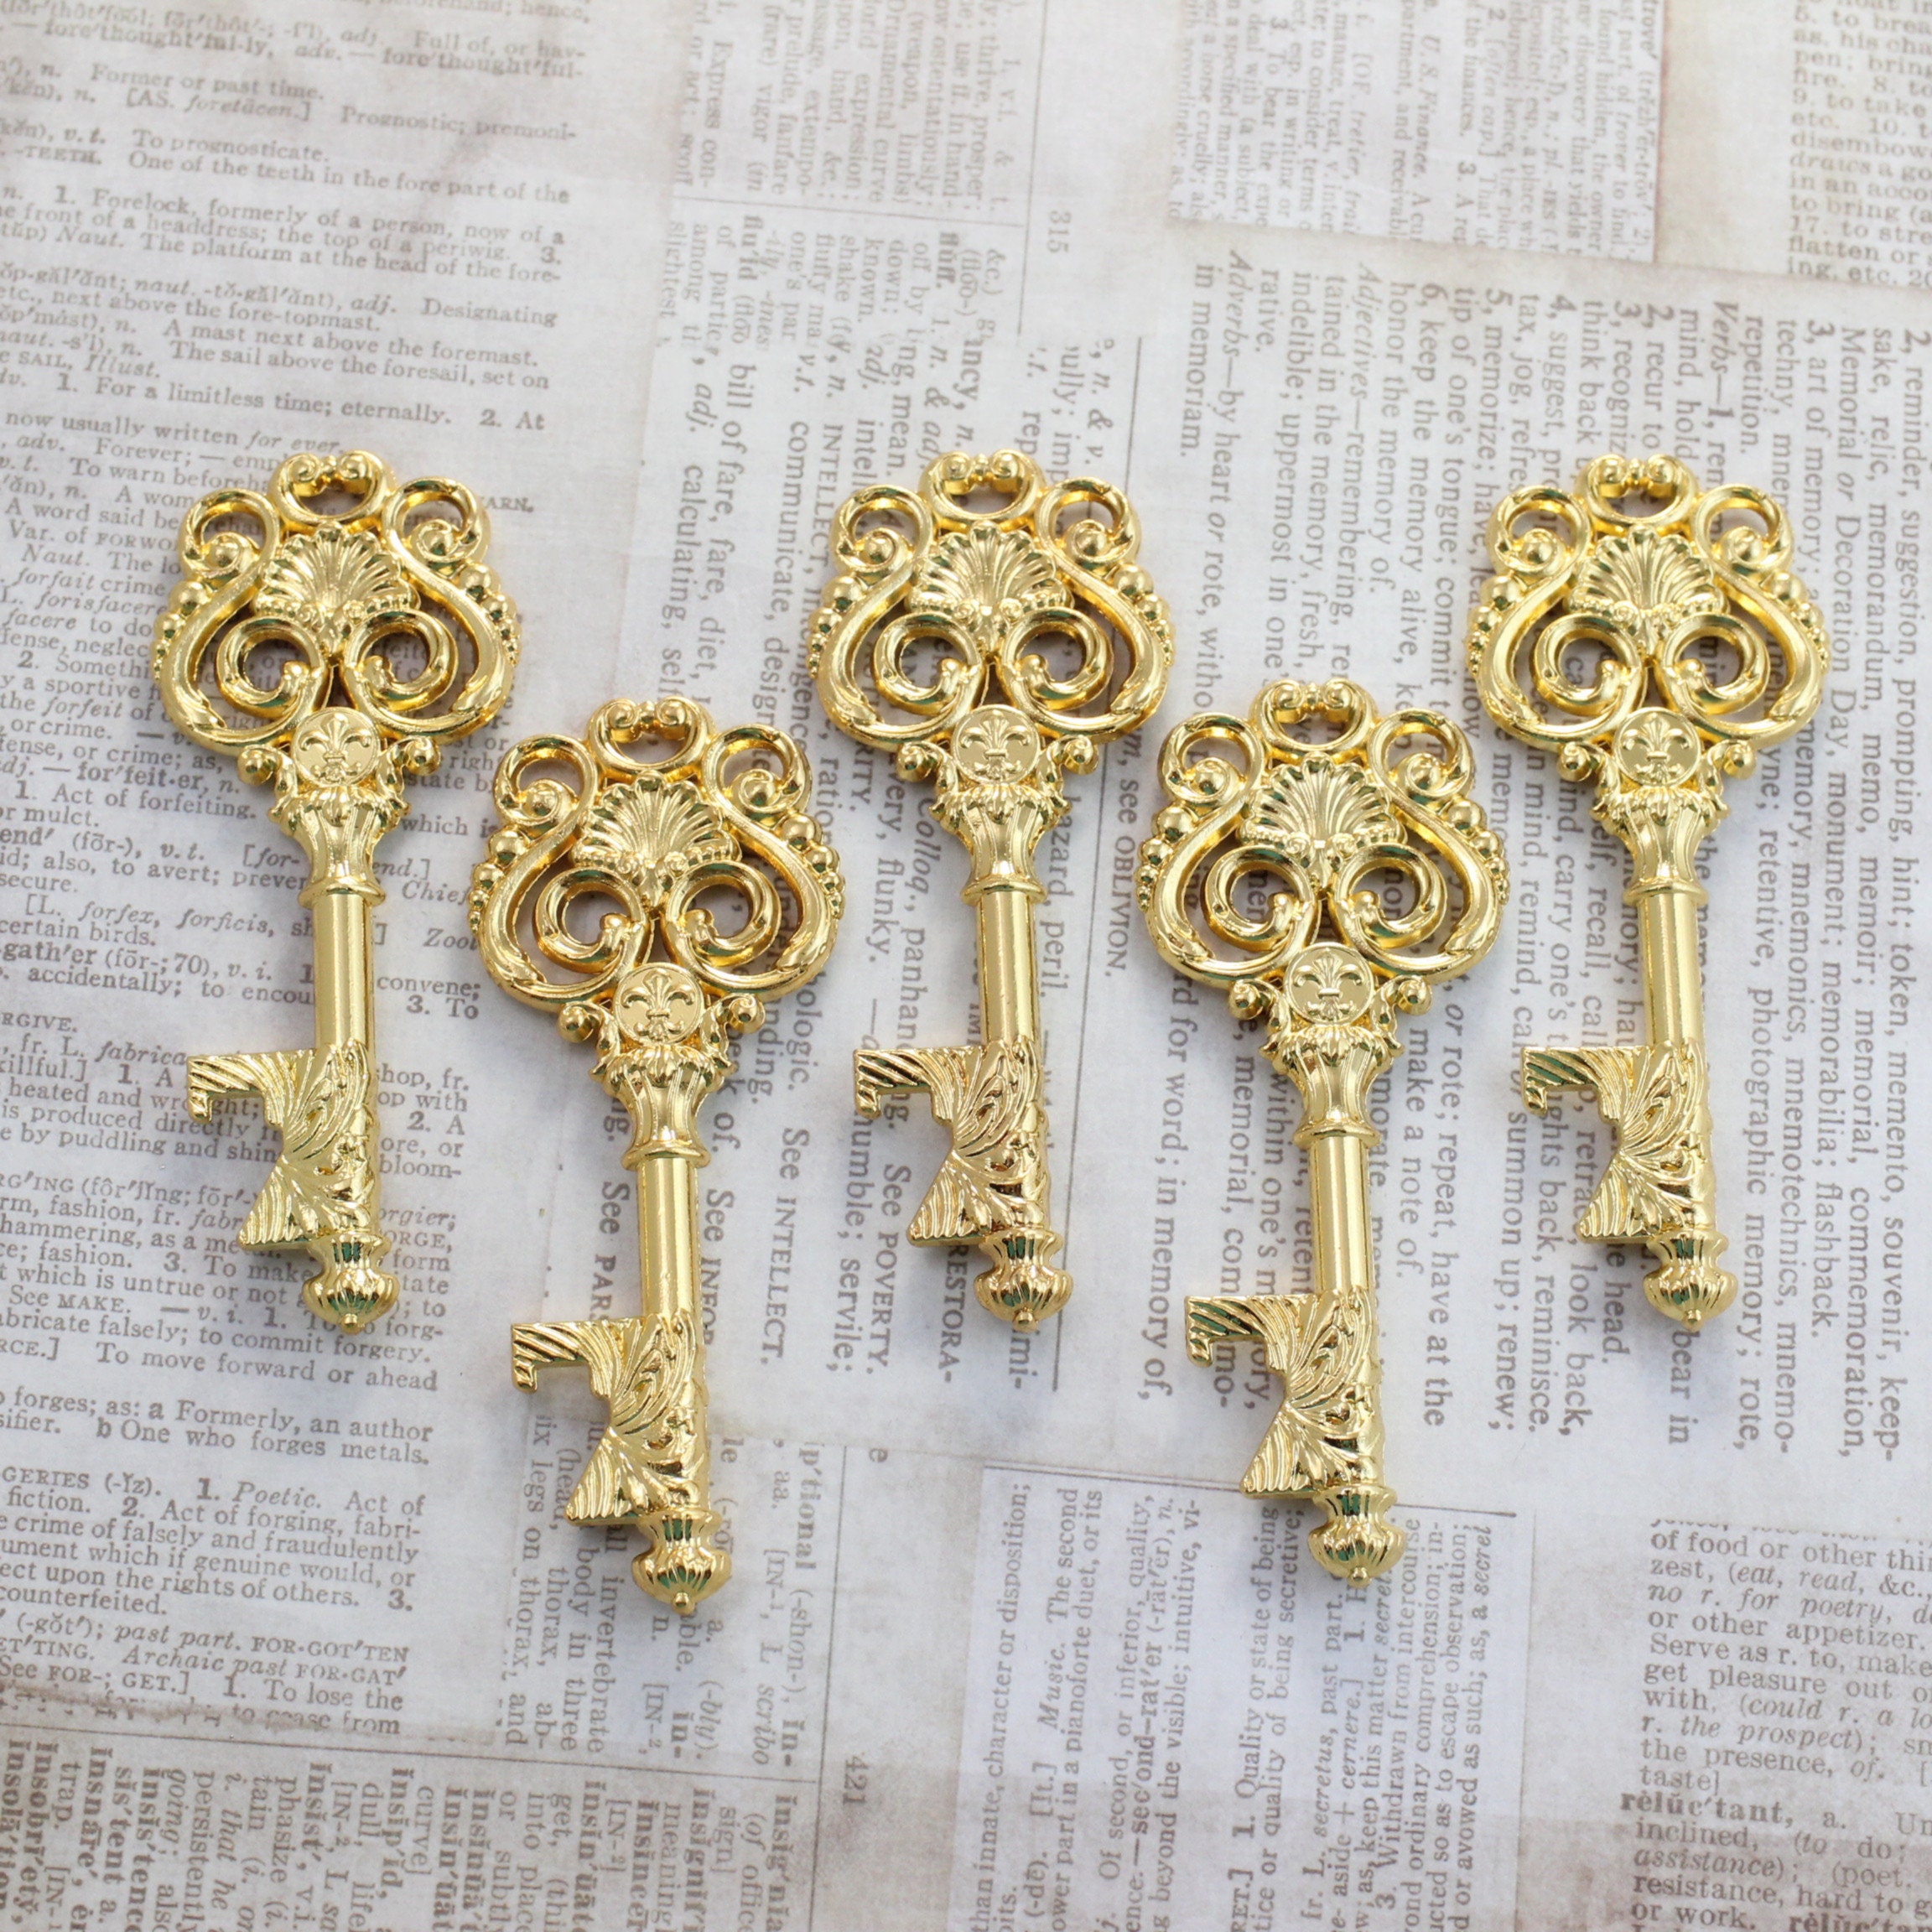 Set of 12 Large Skeleton Keys With 4 Locks on A Big Ring Antique